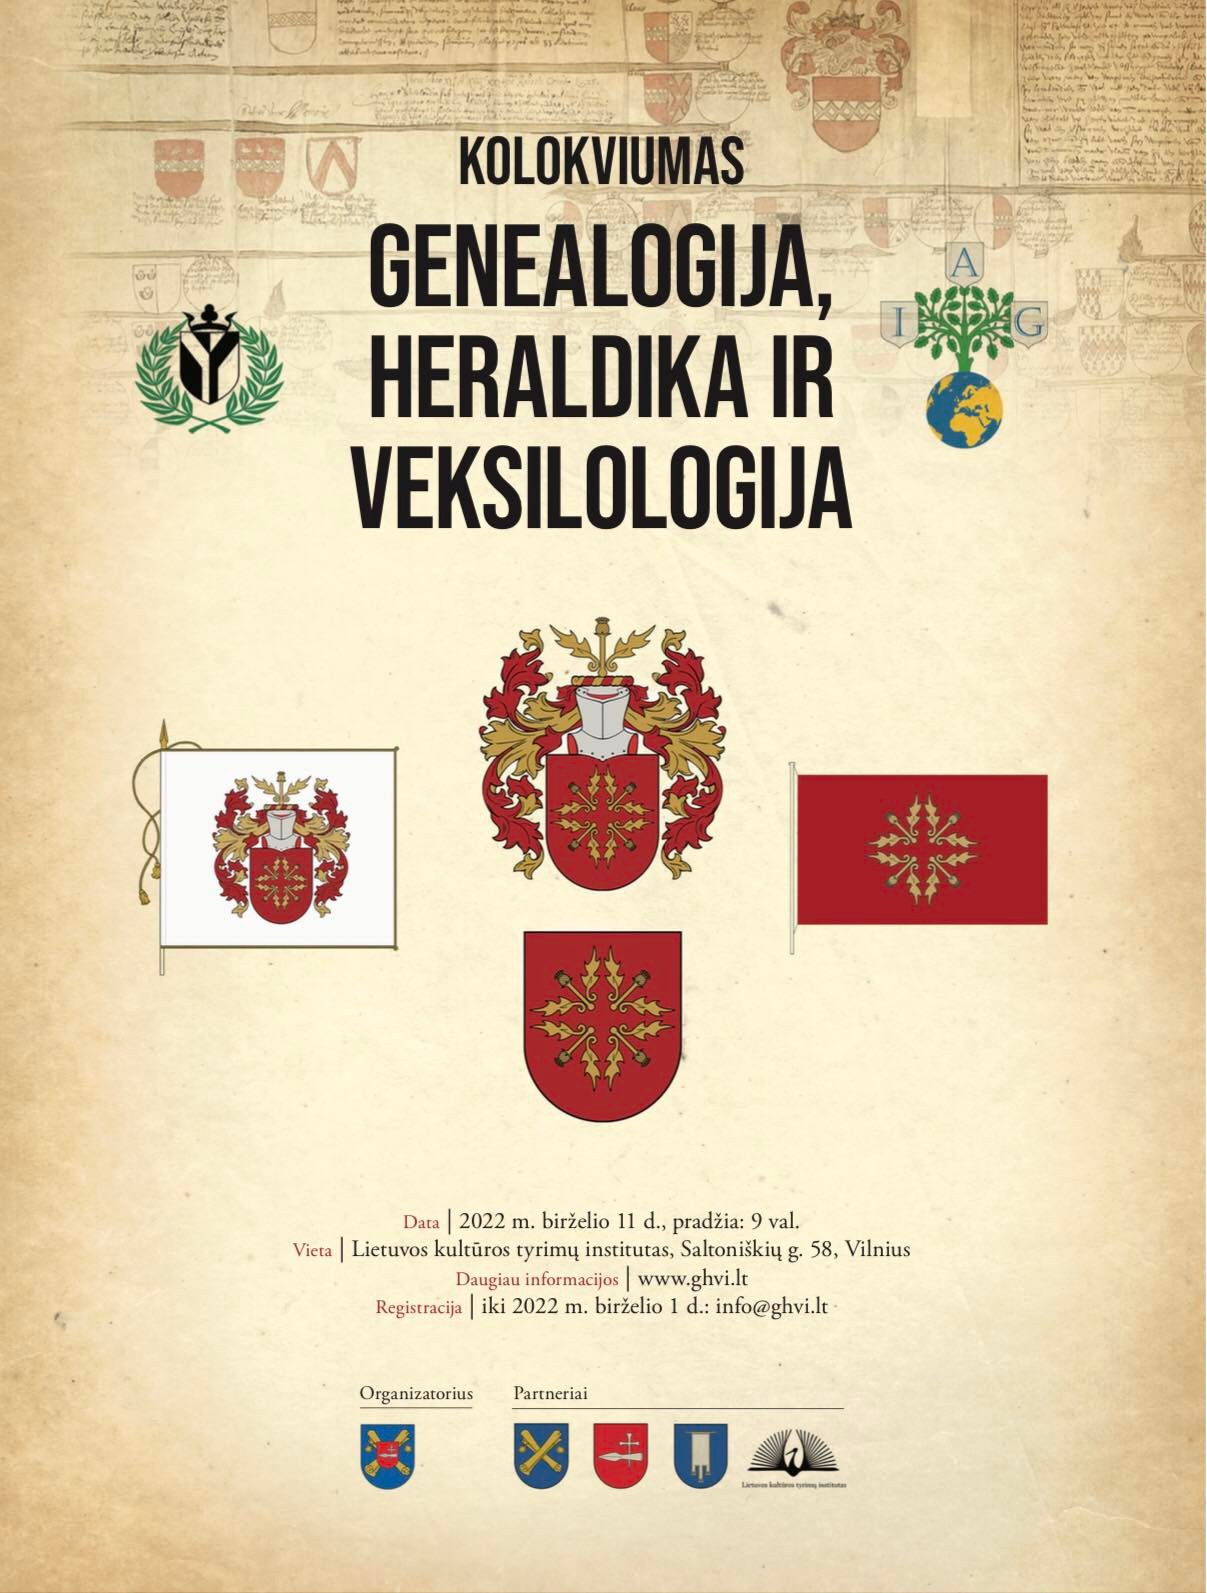 Kolokviumas - Genealogija, heraldika ir veksilologija.jpg